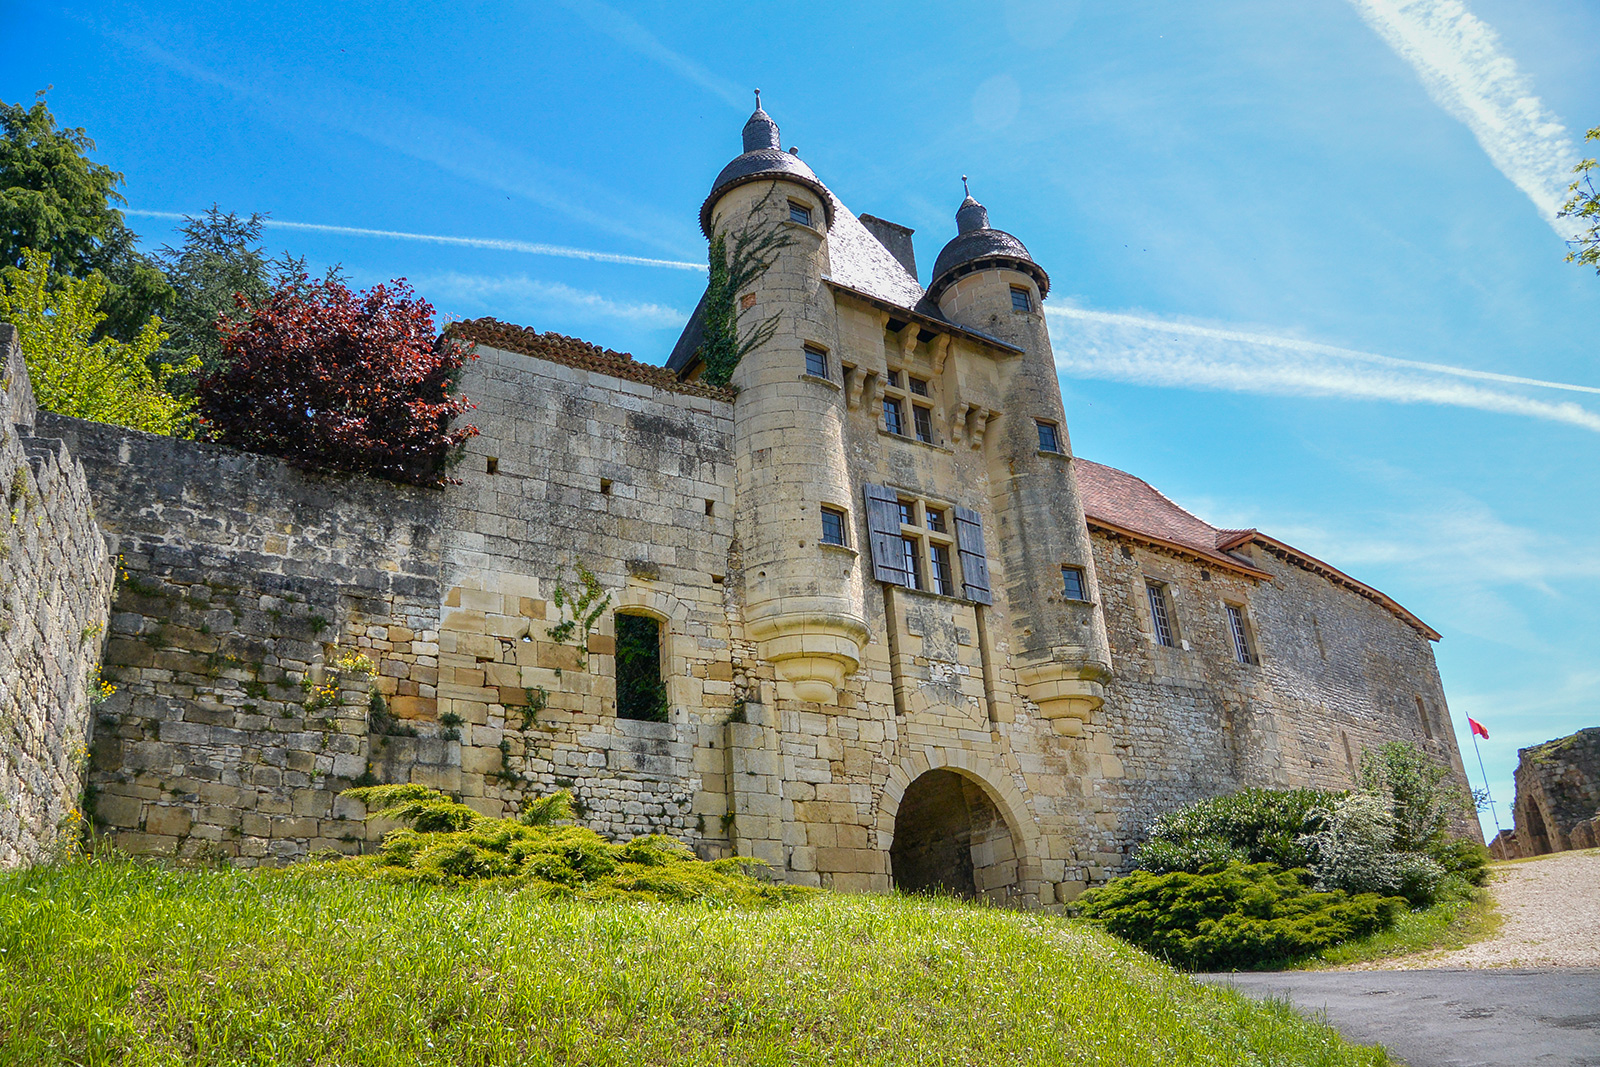 Château d'Excideuil